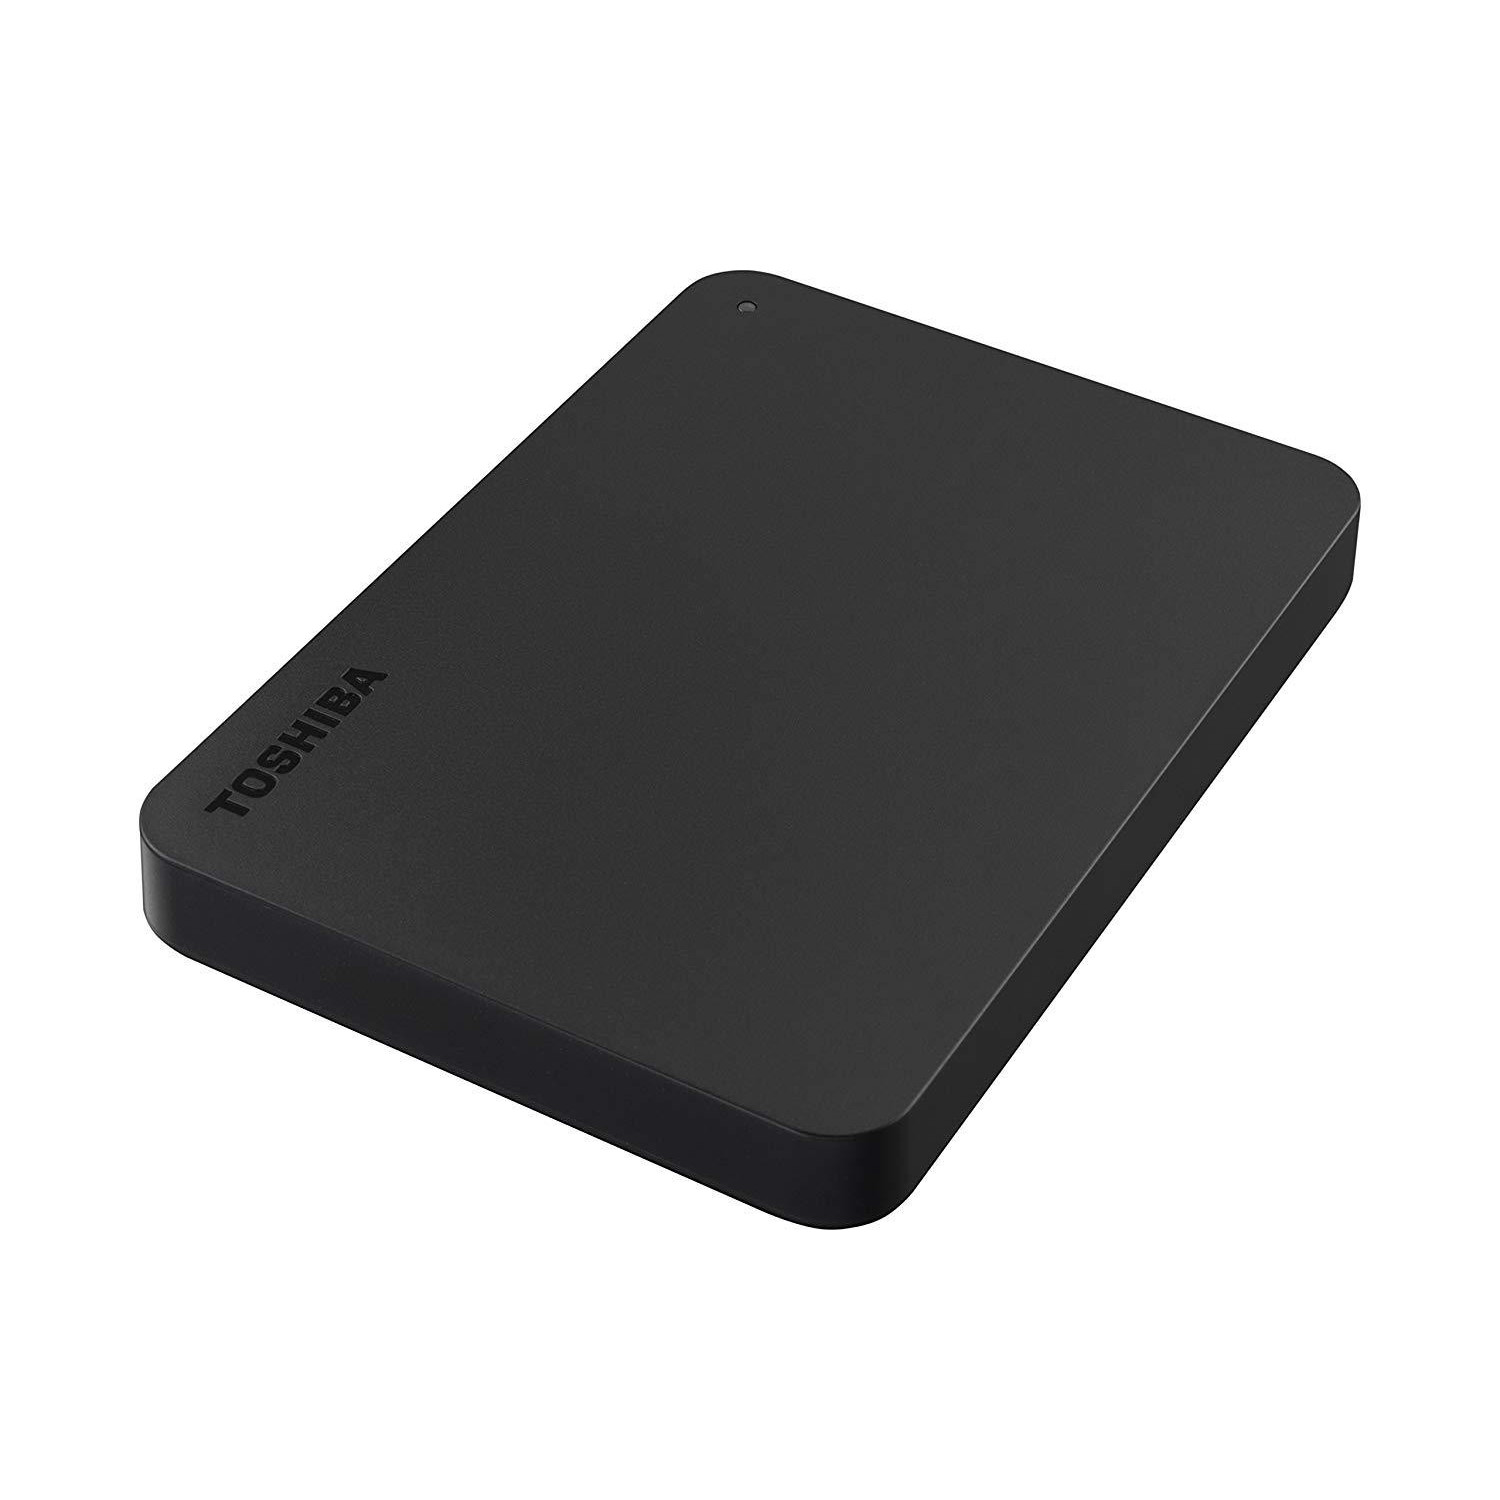 Външен хард диск Toshiba Canvio Basics, 2TB, 2.5" HDD, USB 3.0